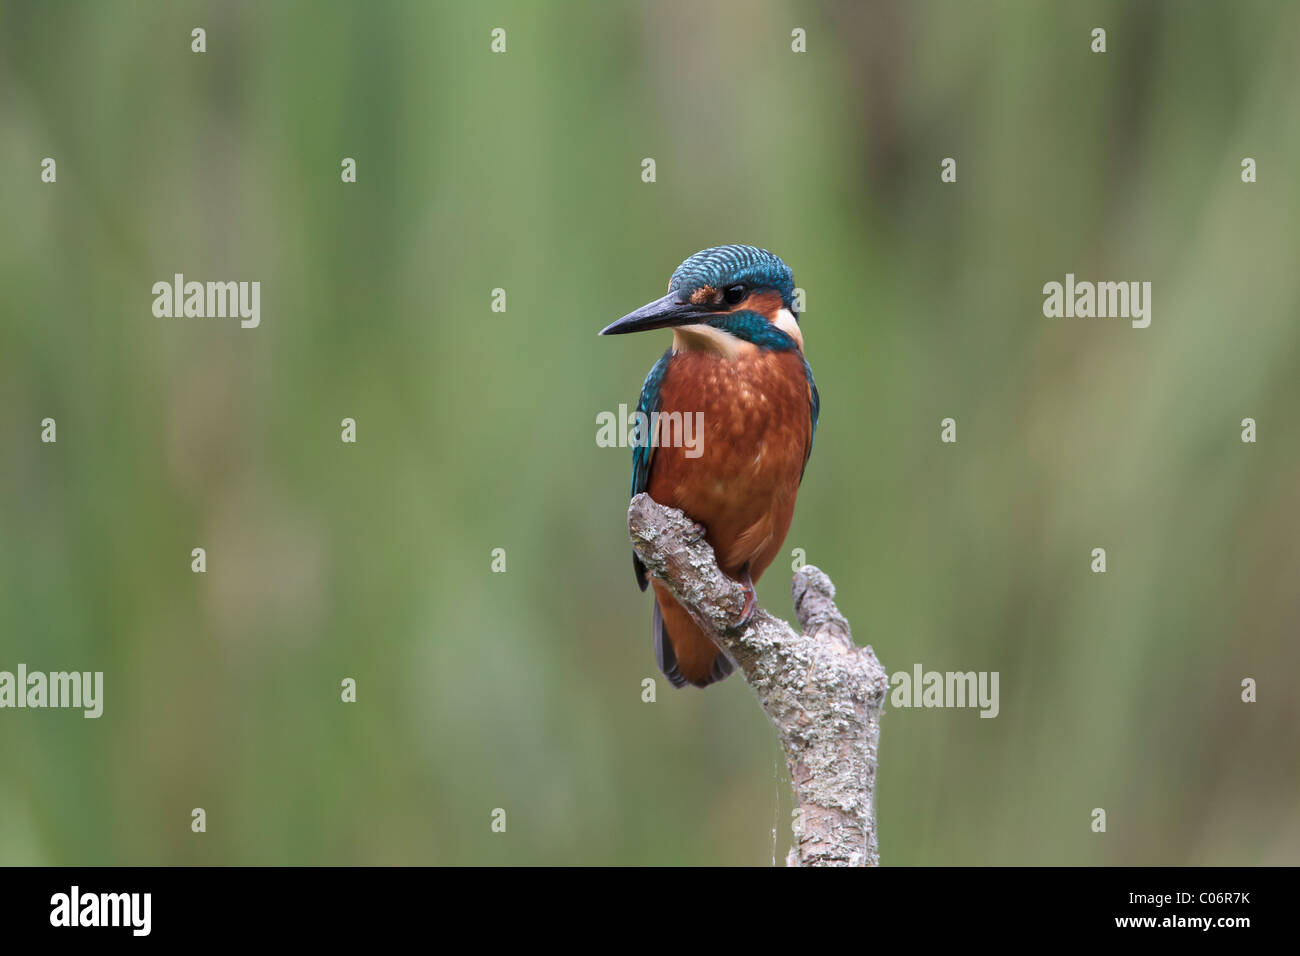 Kingfisher encaramado sobre un fondo de follaje verde Foto de stock